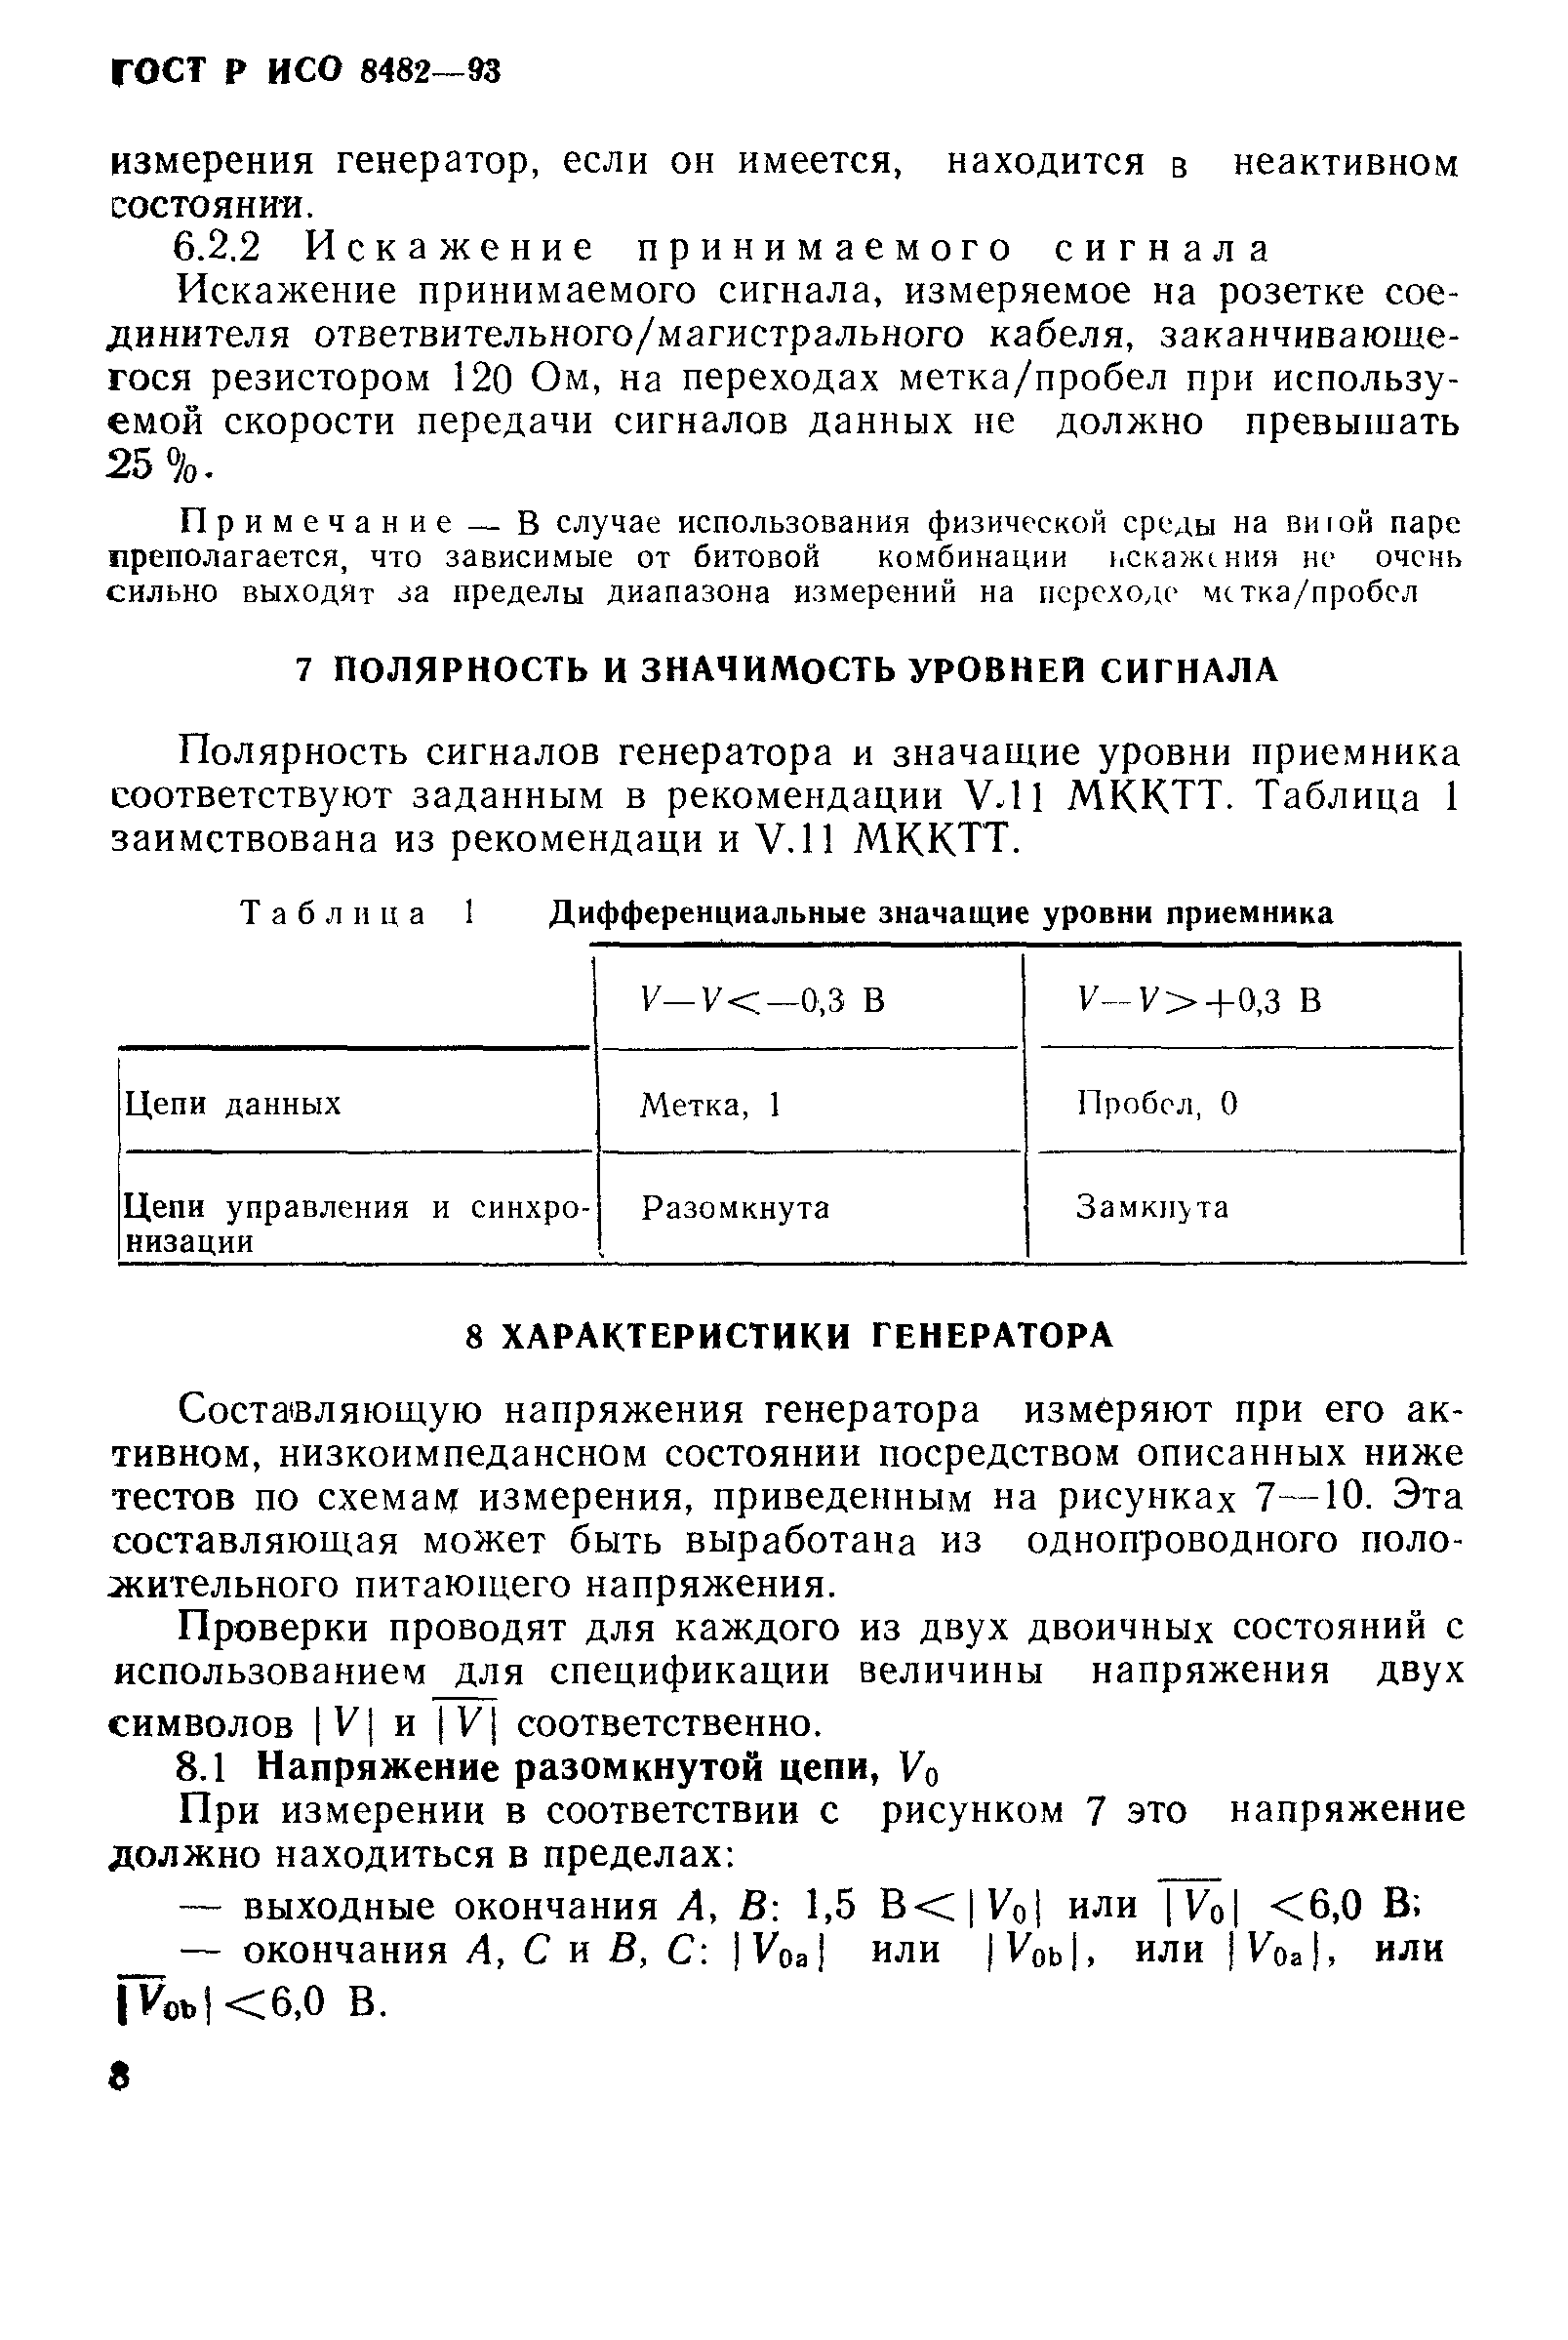 ГОСТ Р ИСО 8482-93